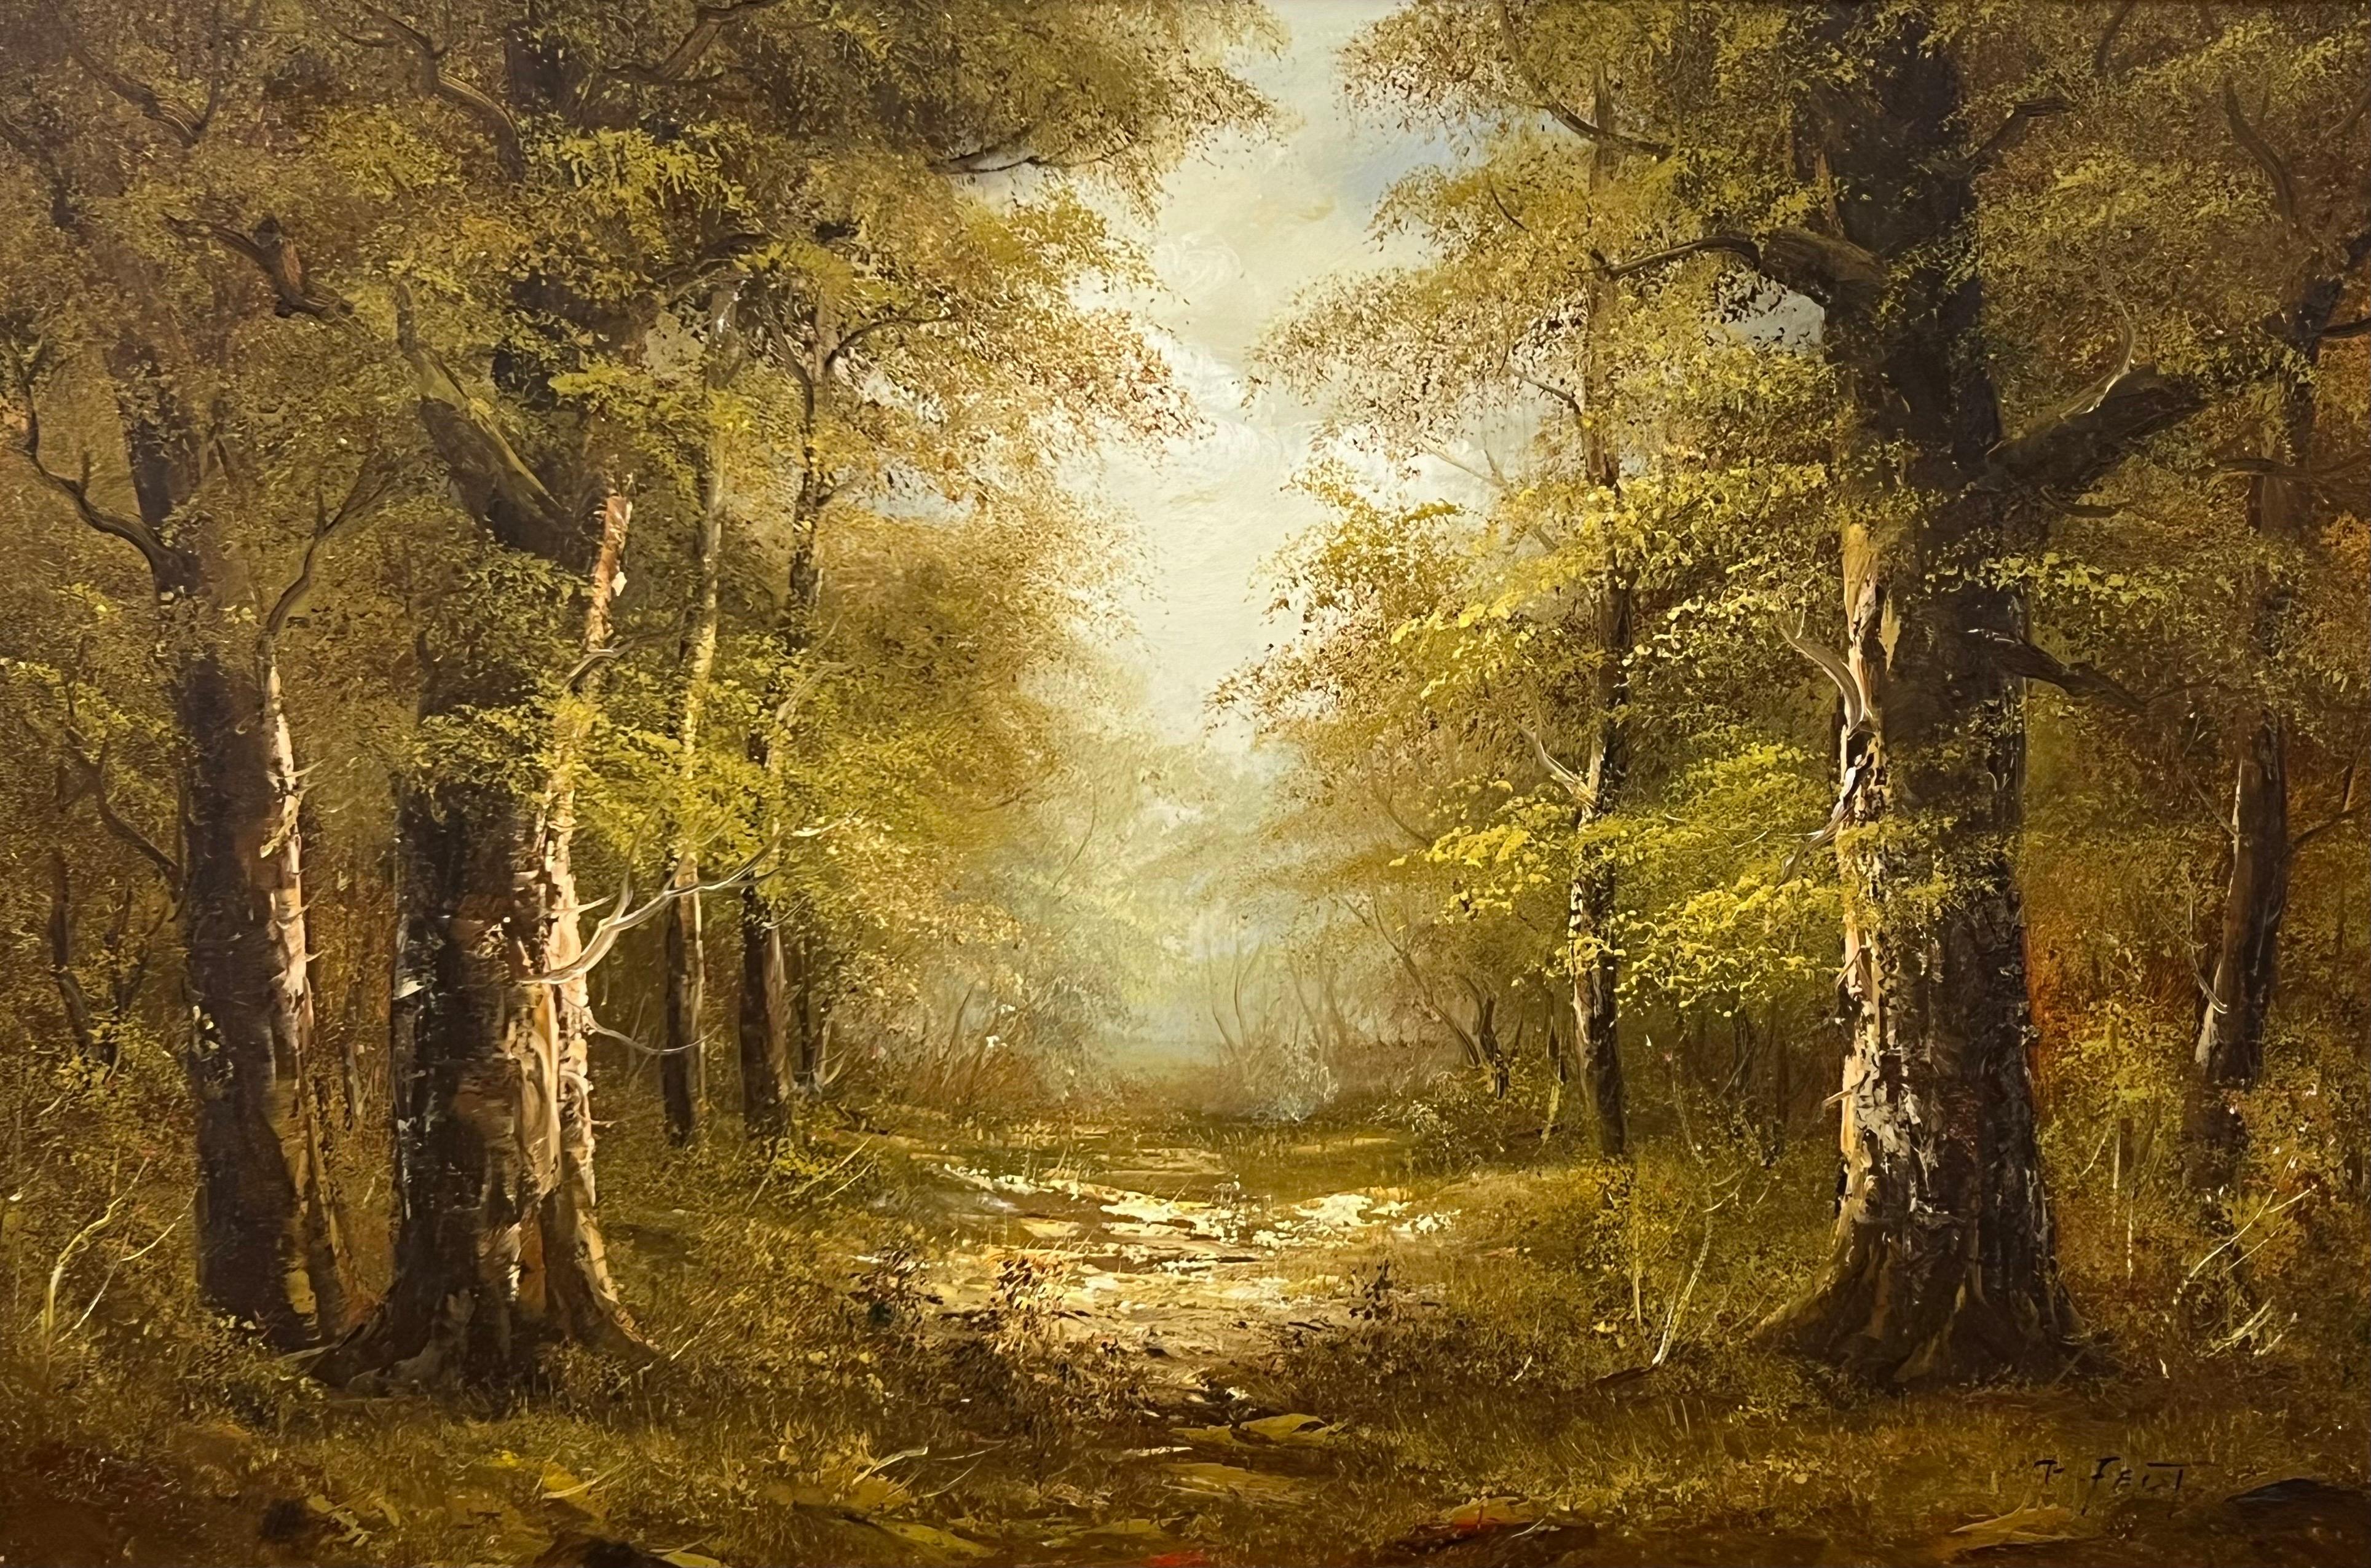 Atmosphärisches impressionistisches Gemälde eines dichten Waldes in europäischem Wald (Impressionismus), Mixed Media Art, von T Feist